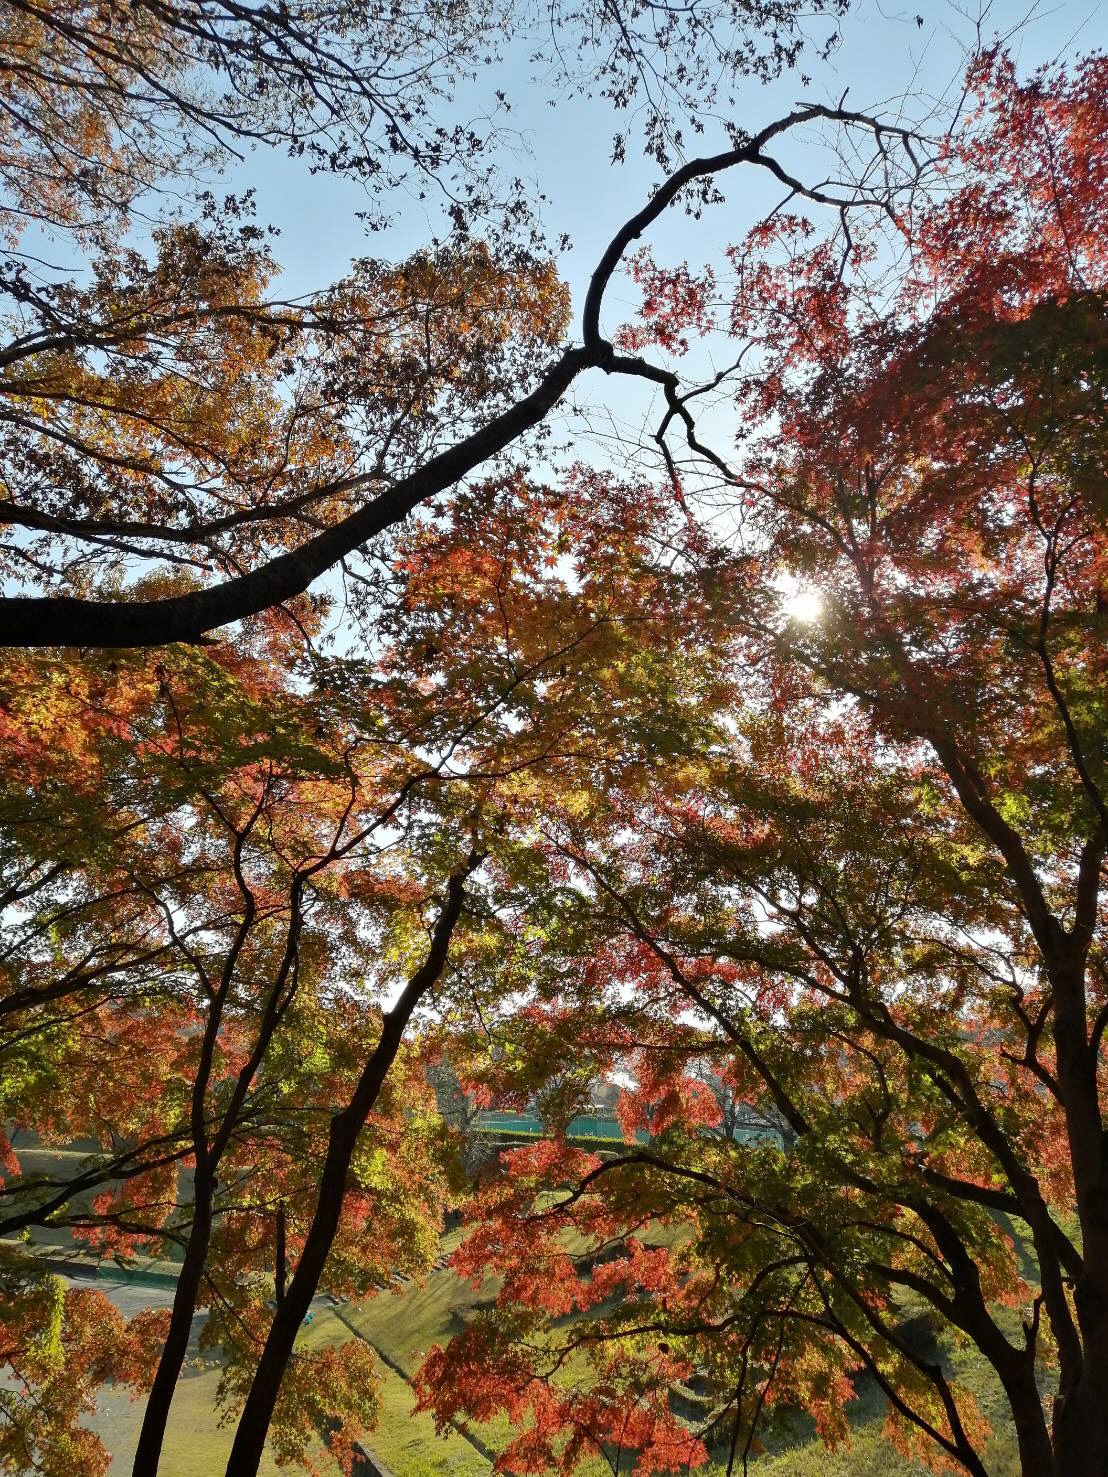 下からのアングルで撮影された紅葉した木々